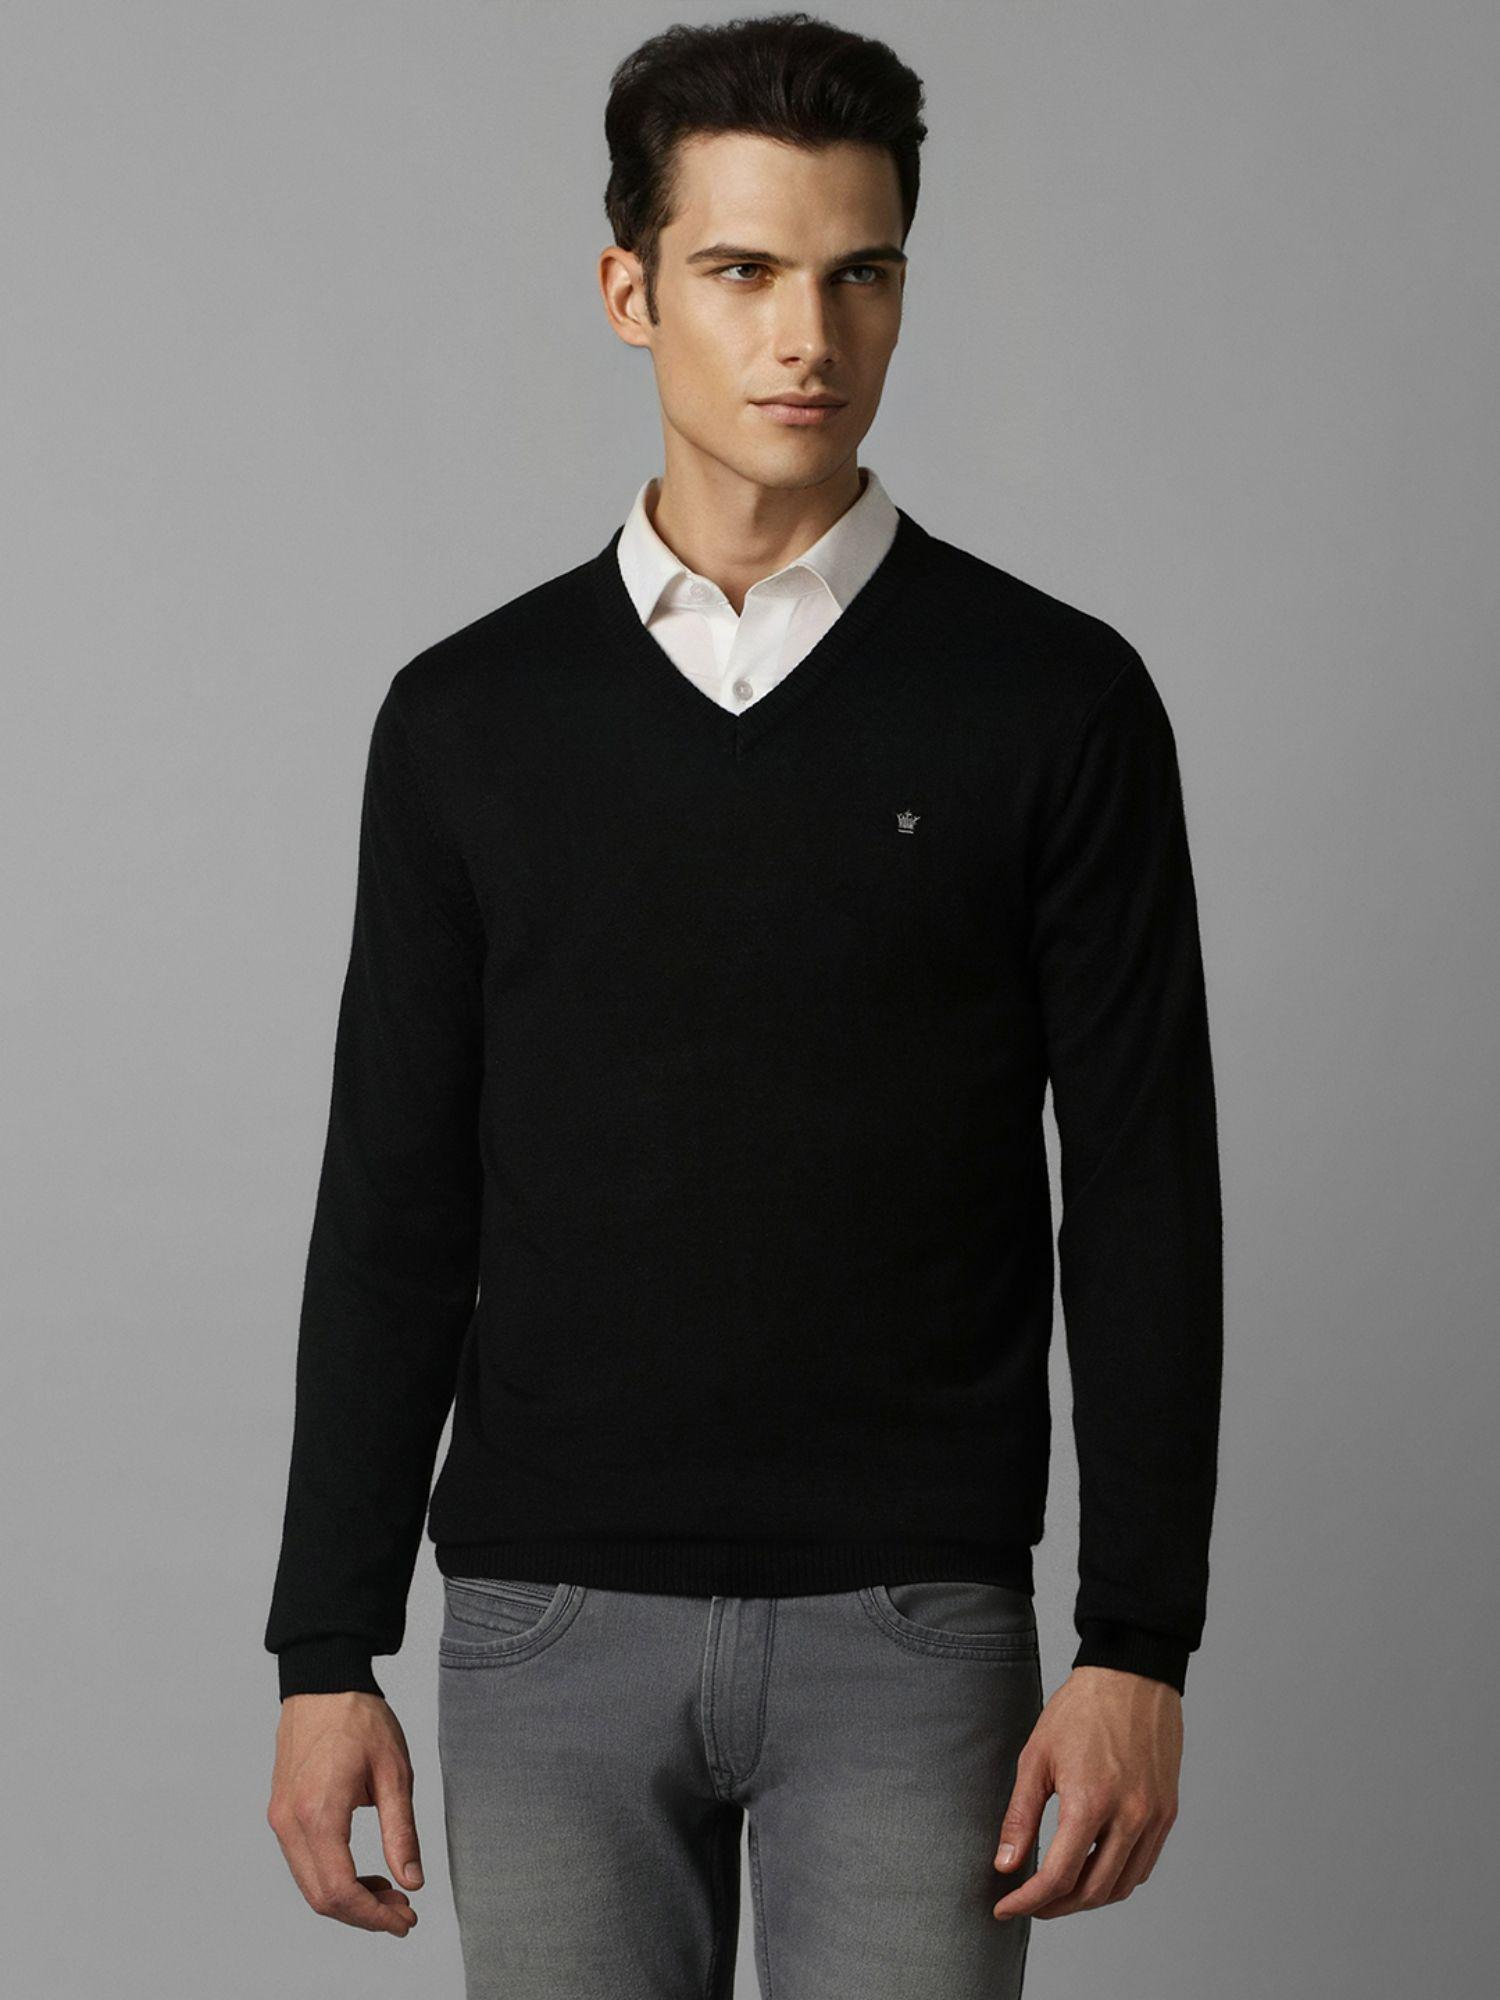 men-black-solid-v-neck-full-sleeves-sweater